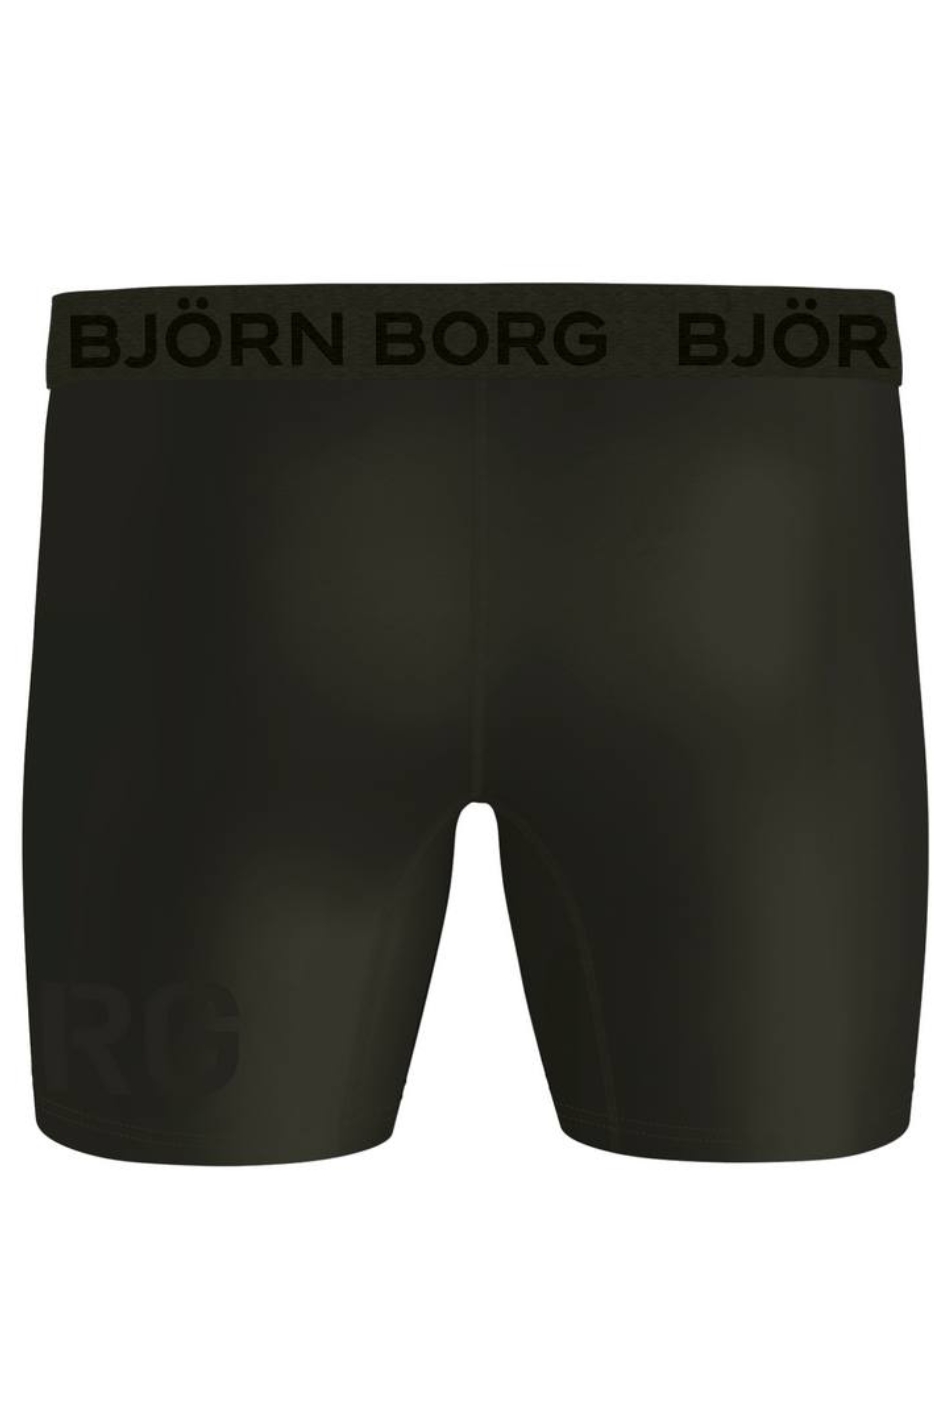 Björn Borg Performance Boxer 2 Pack